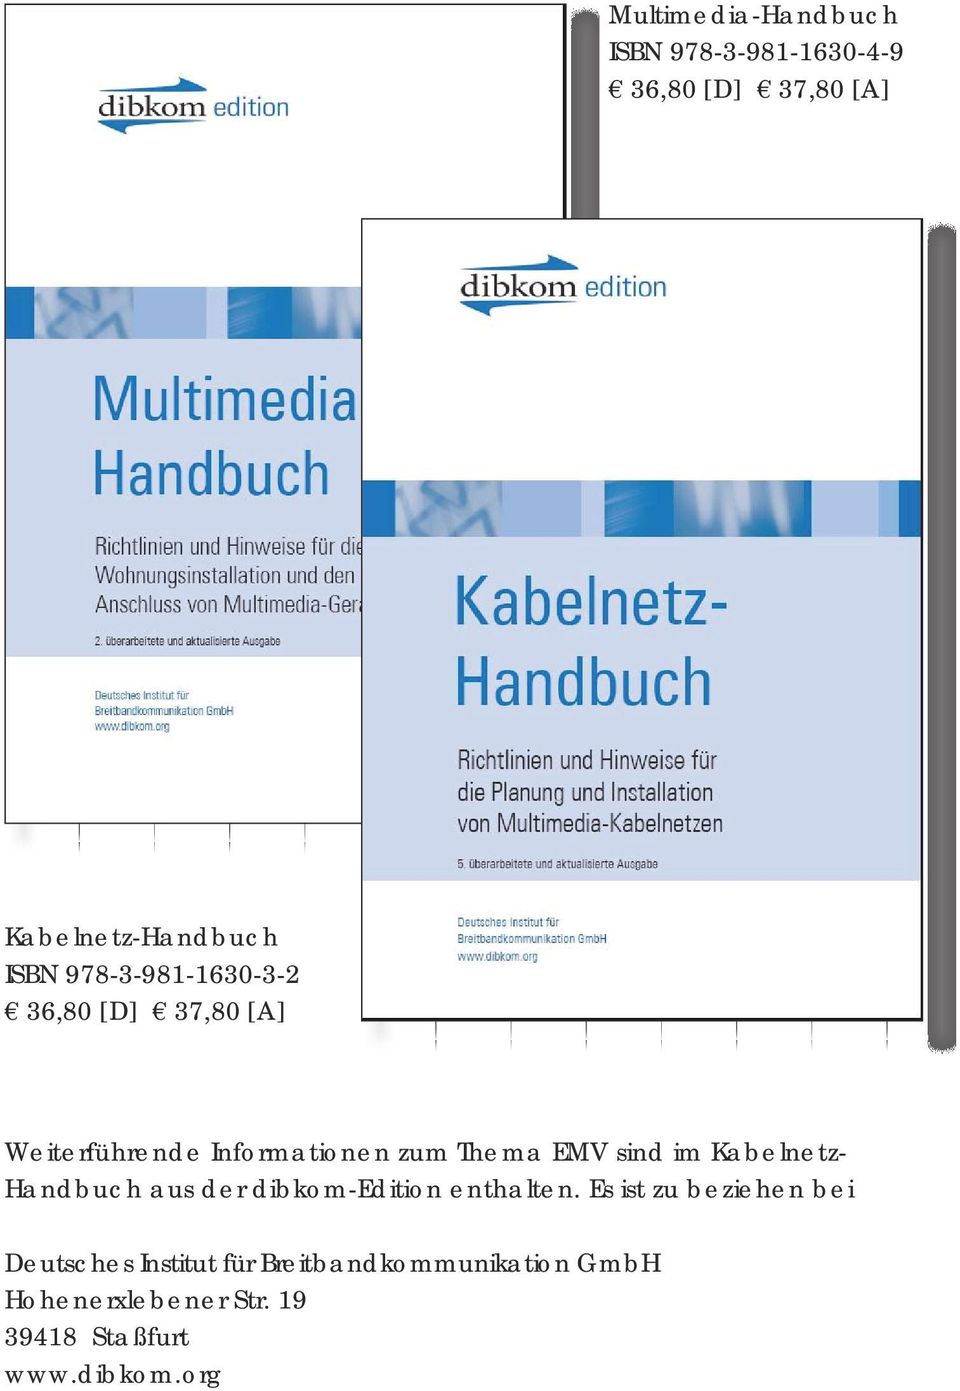 Kabelnetz- Handbuch aus der dibkom-edition enthalten.